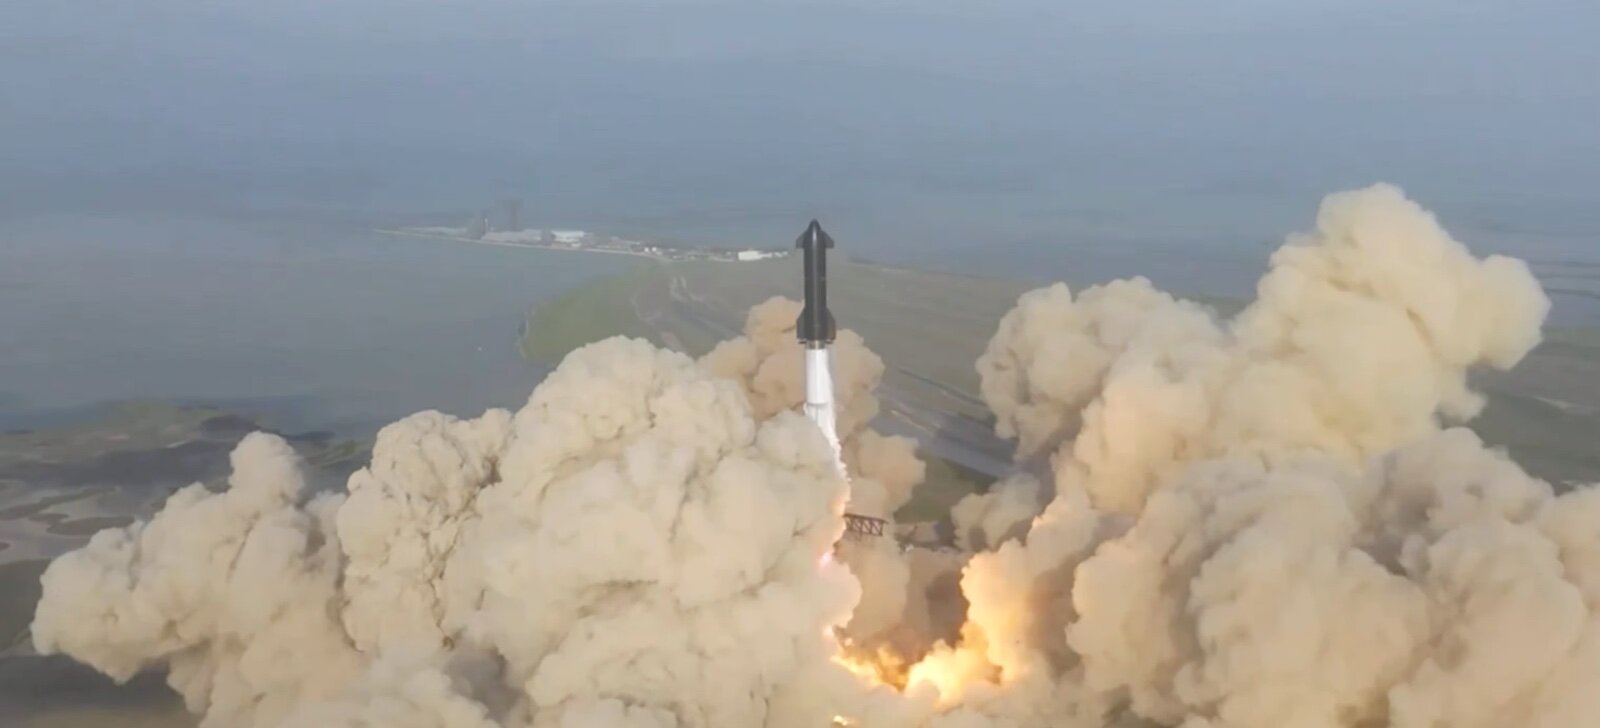 Εκτοξεύτηκε για πρώτη φορά το Starship της SpaceX